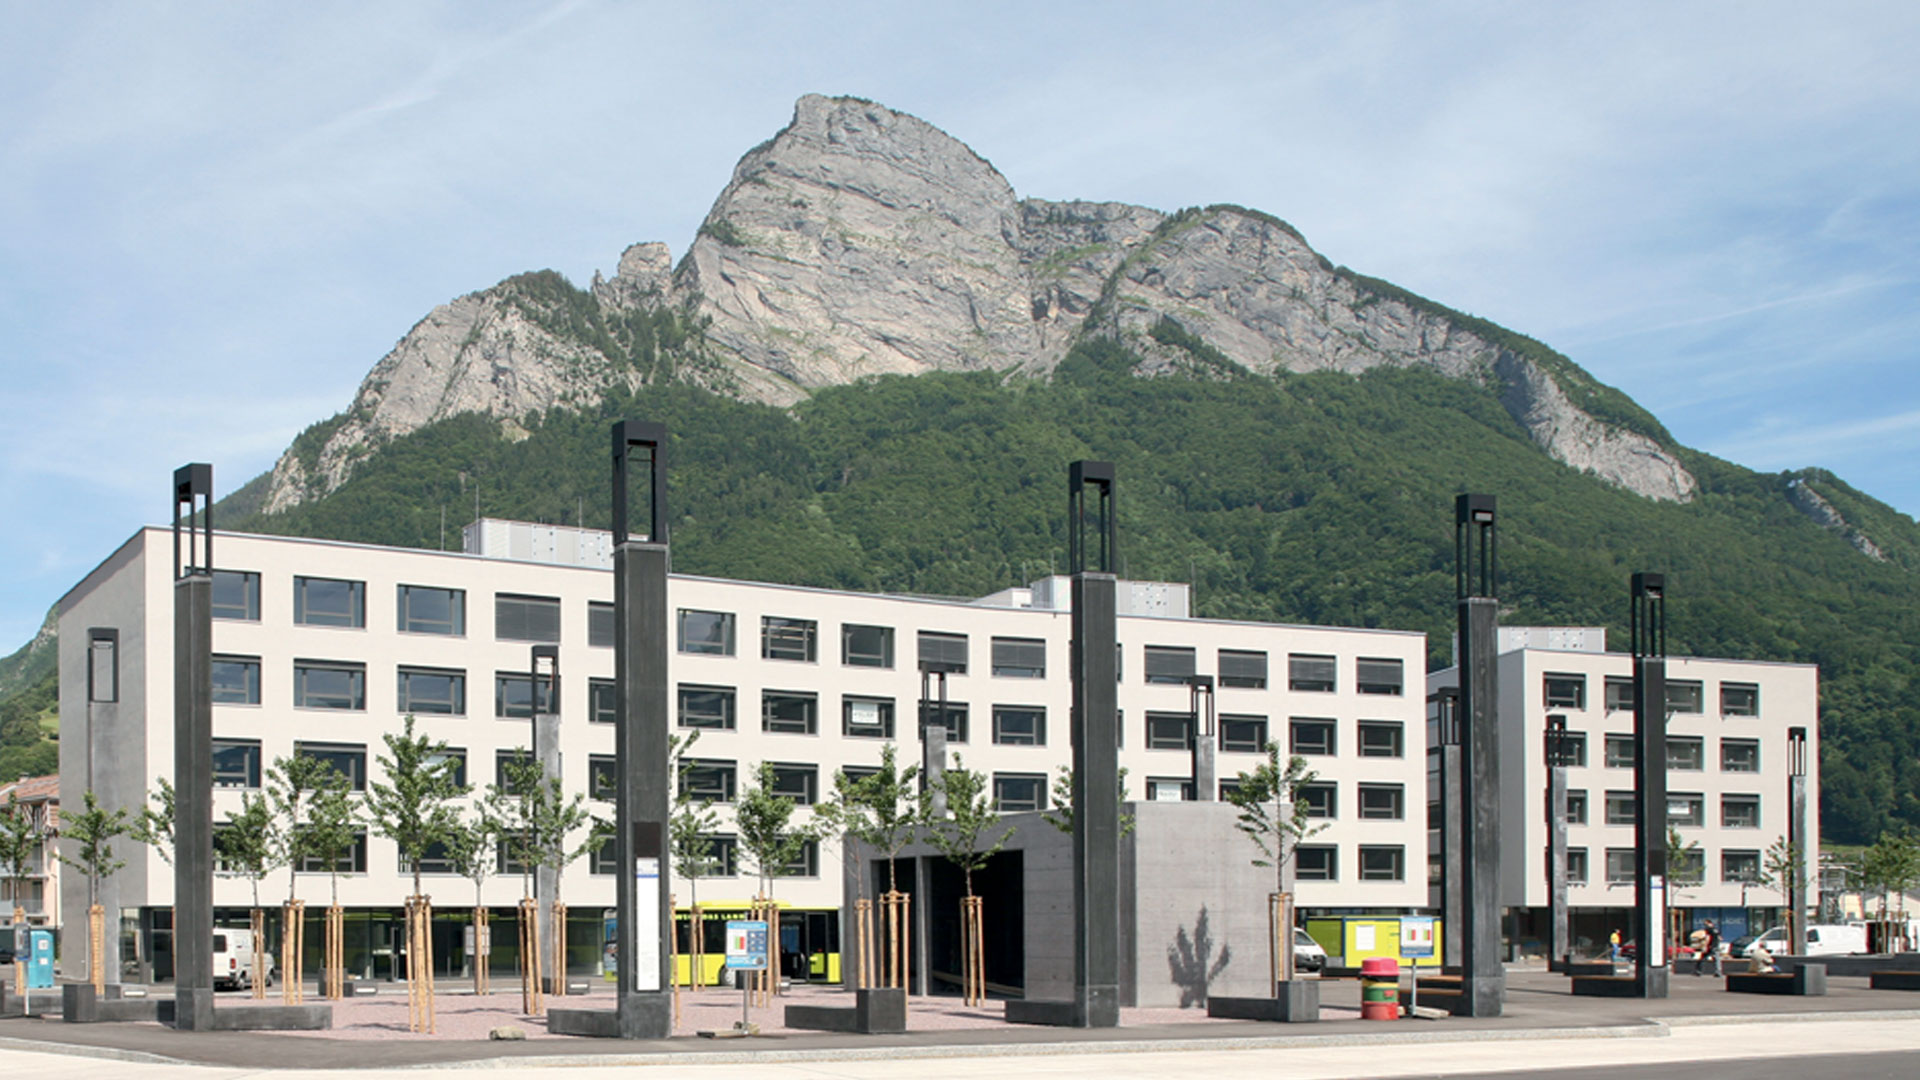 Photo de référence d'EgoKiefer, immeuble de bureaux de Sargans, montagne en arrière-plan